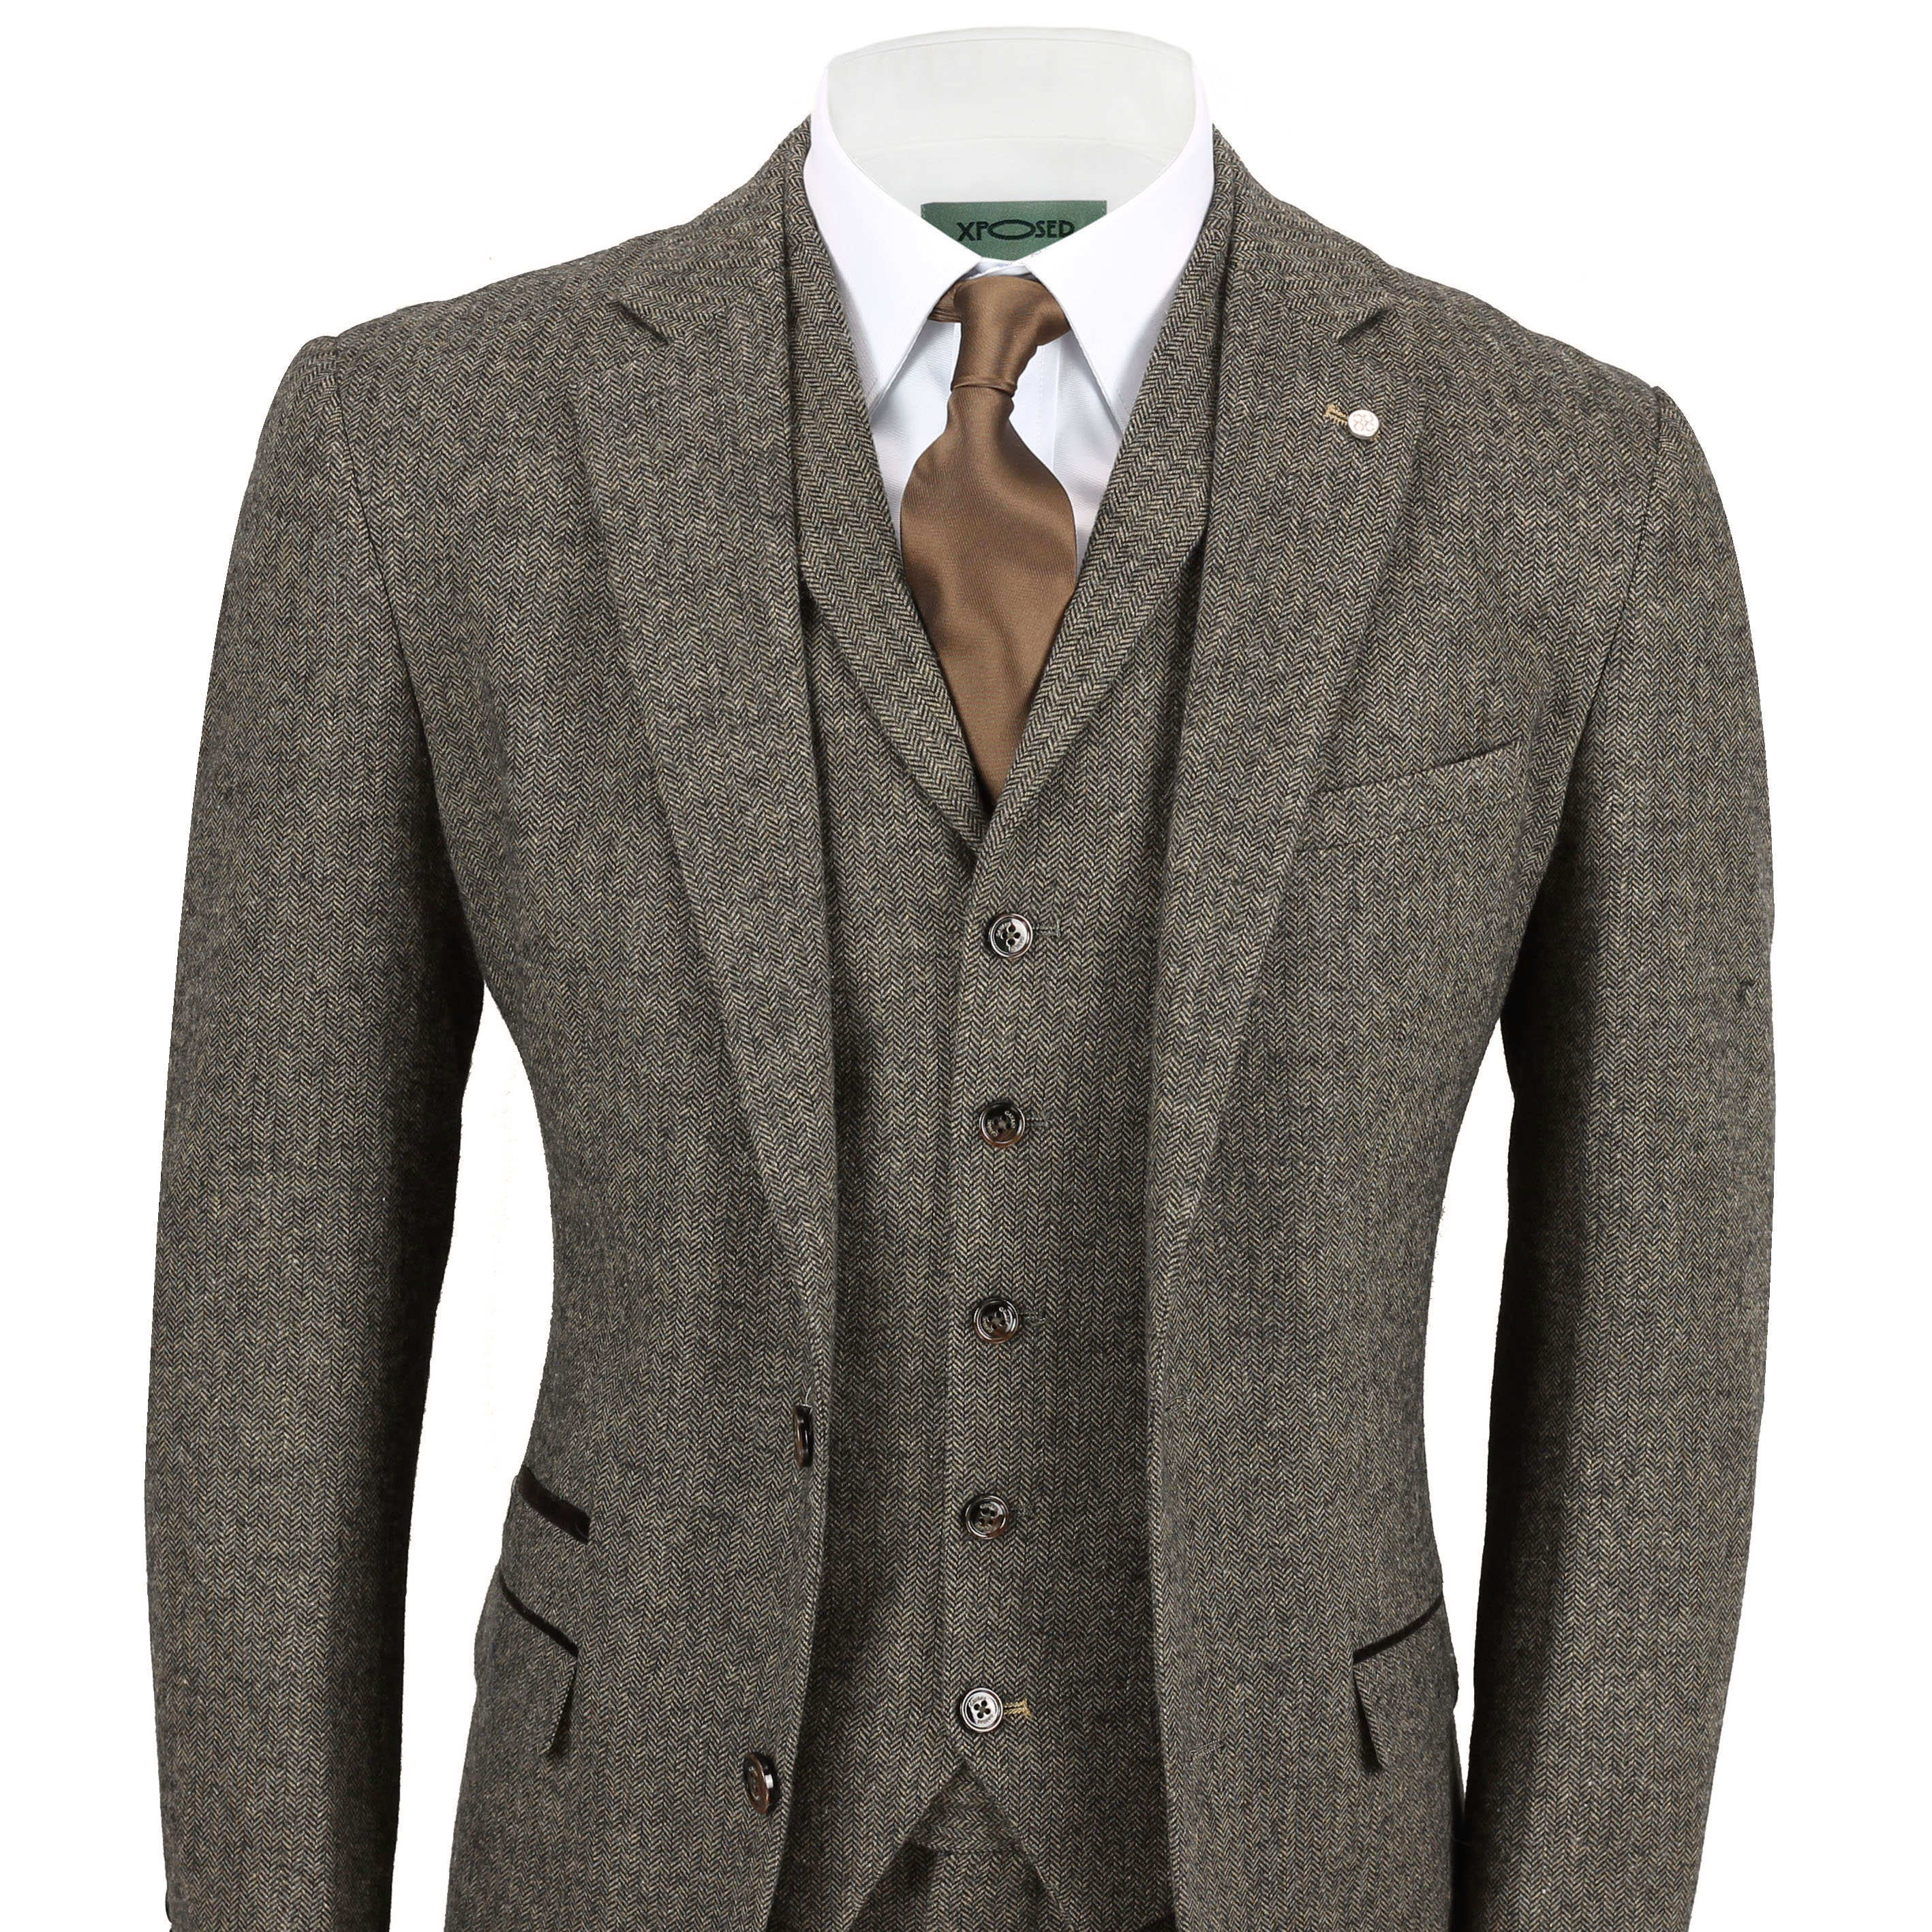 Mens Wool Mix 3 Piece Suit Vintage Herringbone Tweed Tailored Fit in ...